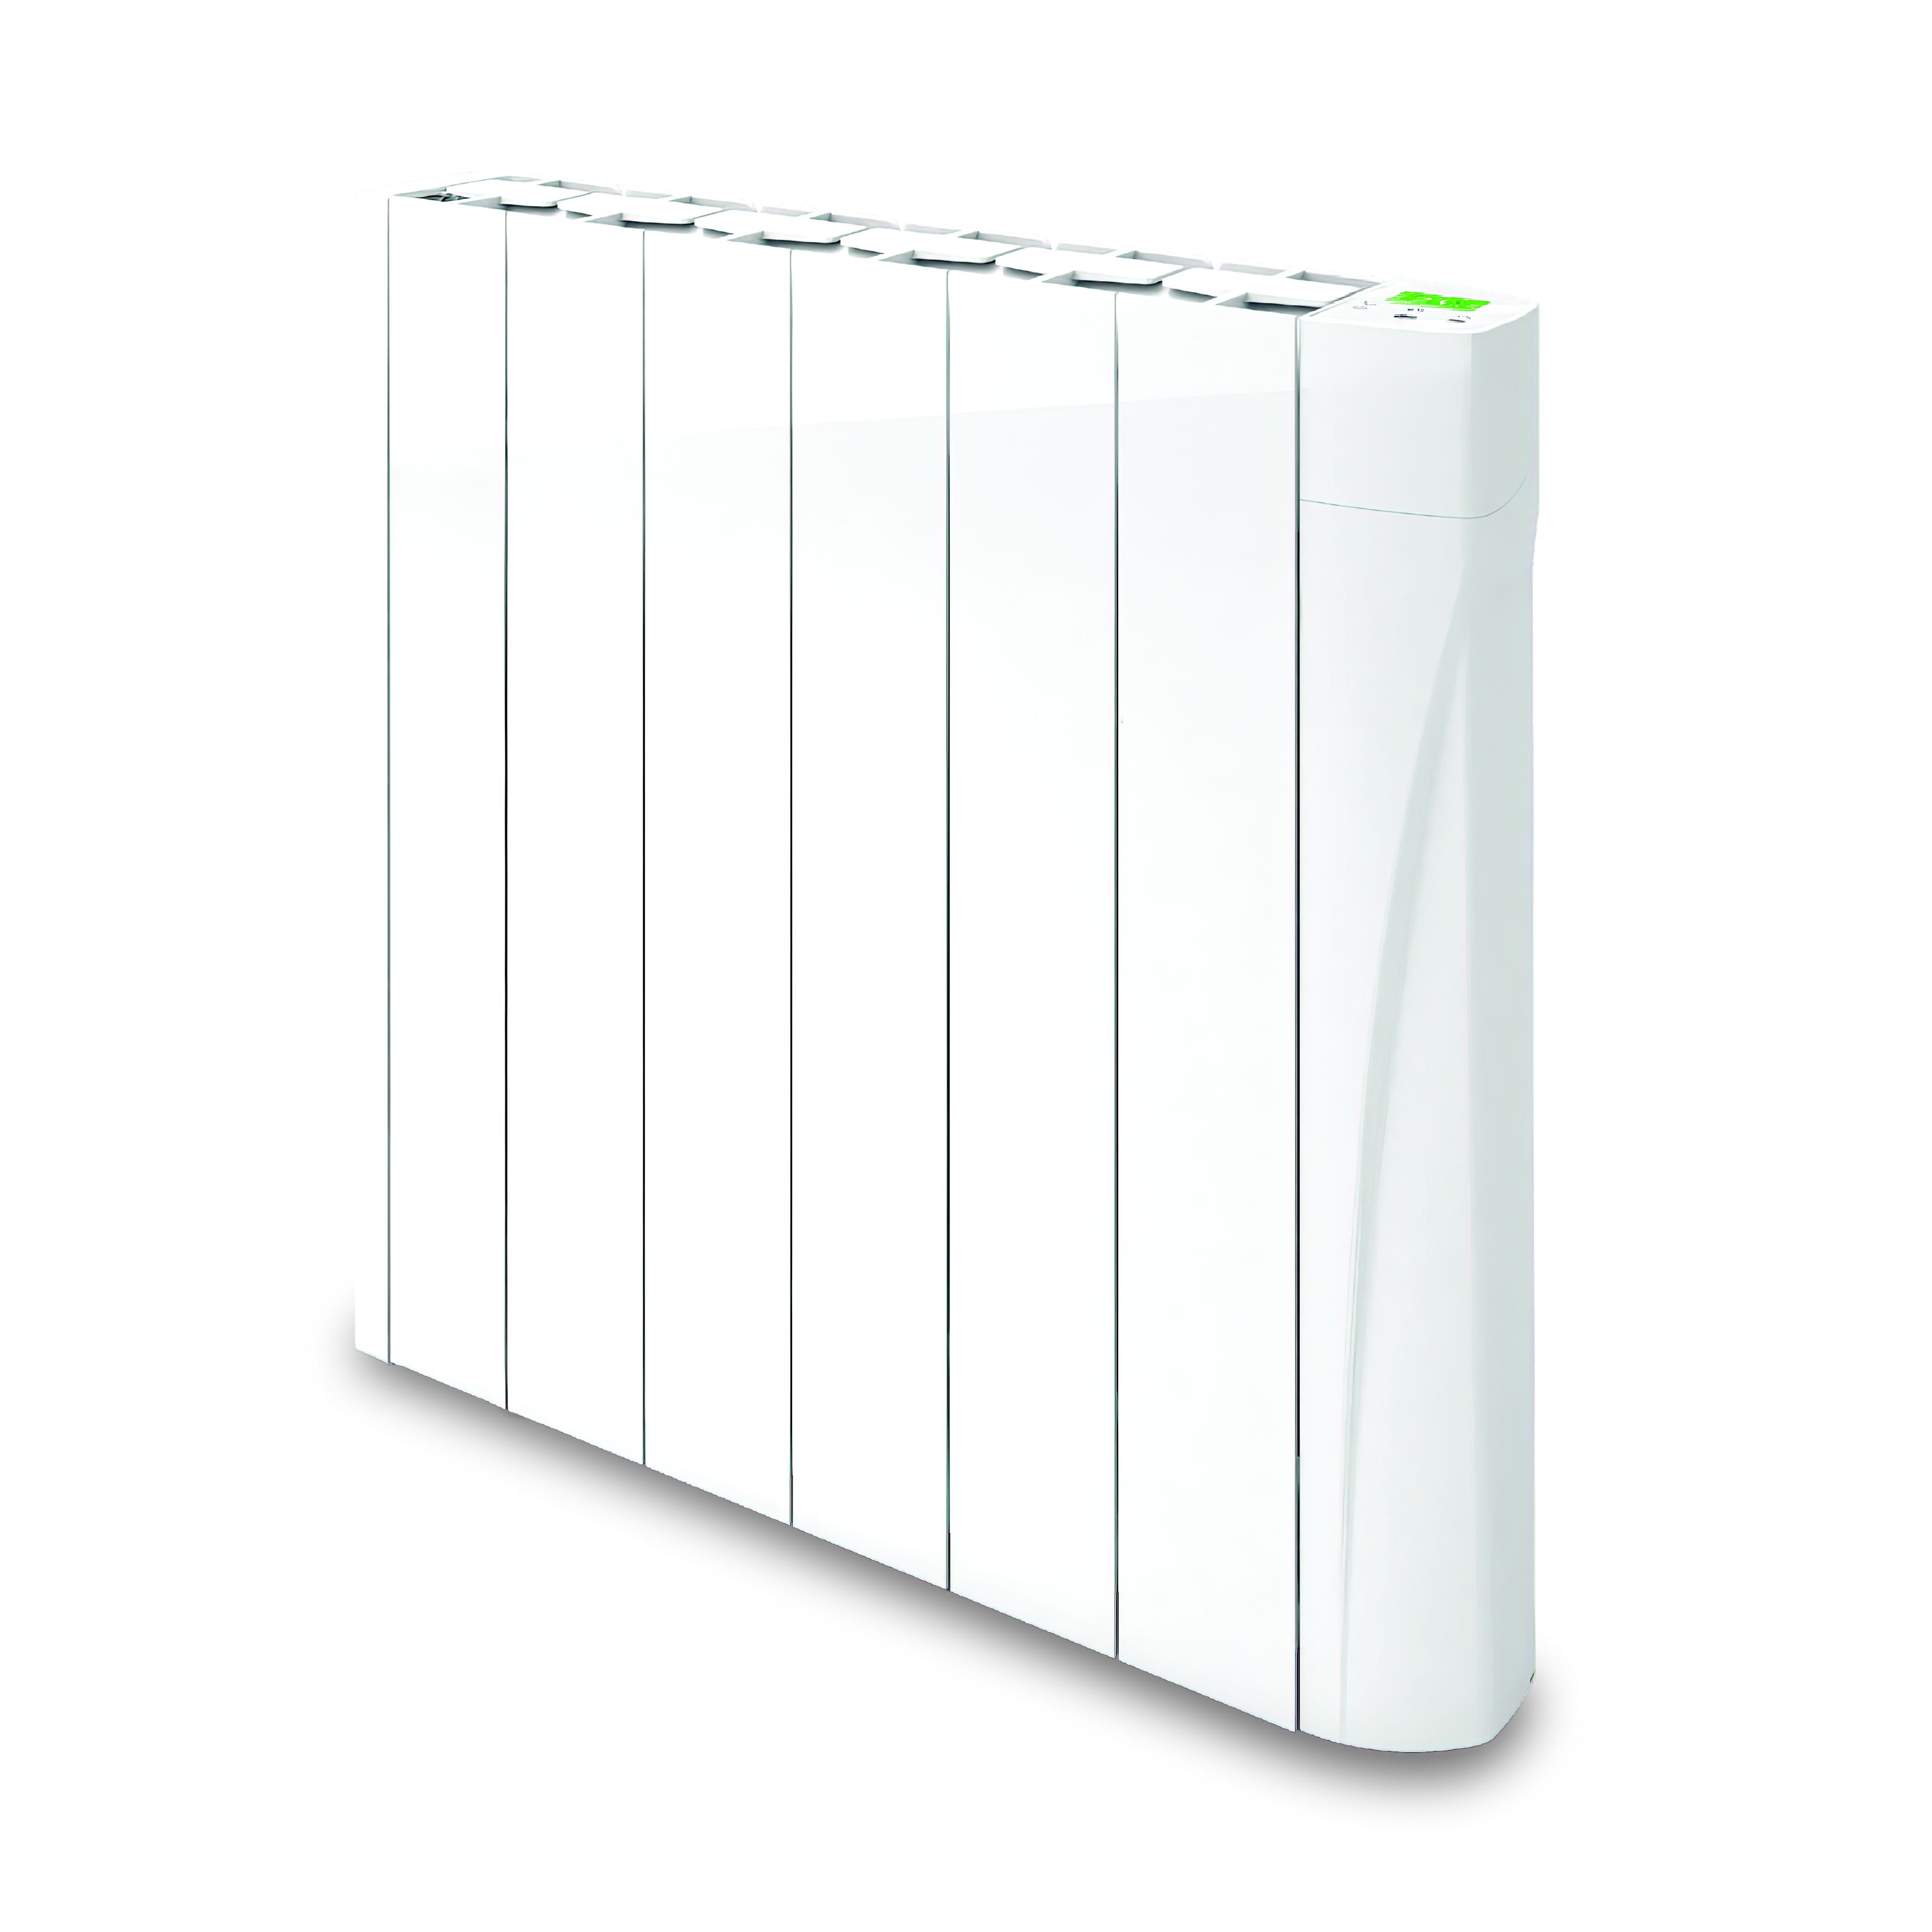 TCP Smart Mains fed 0.75kW White Oil-filled radiator